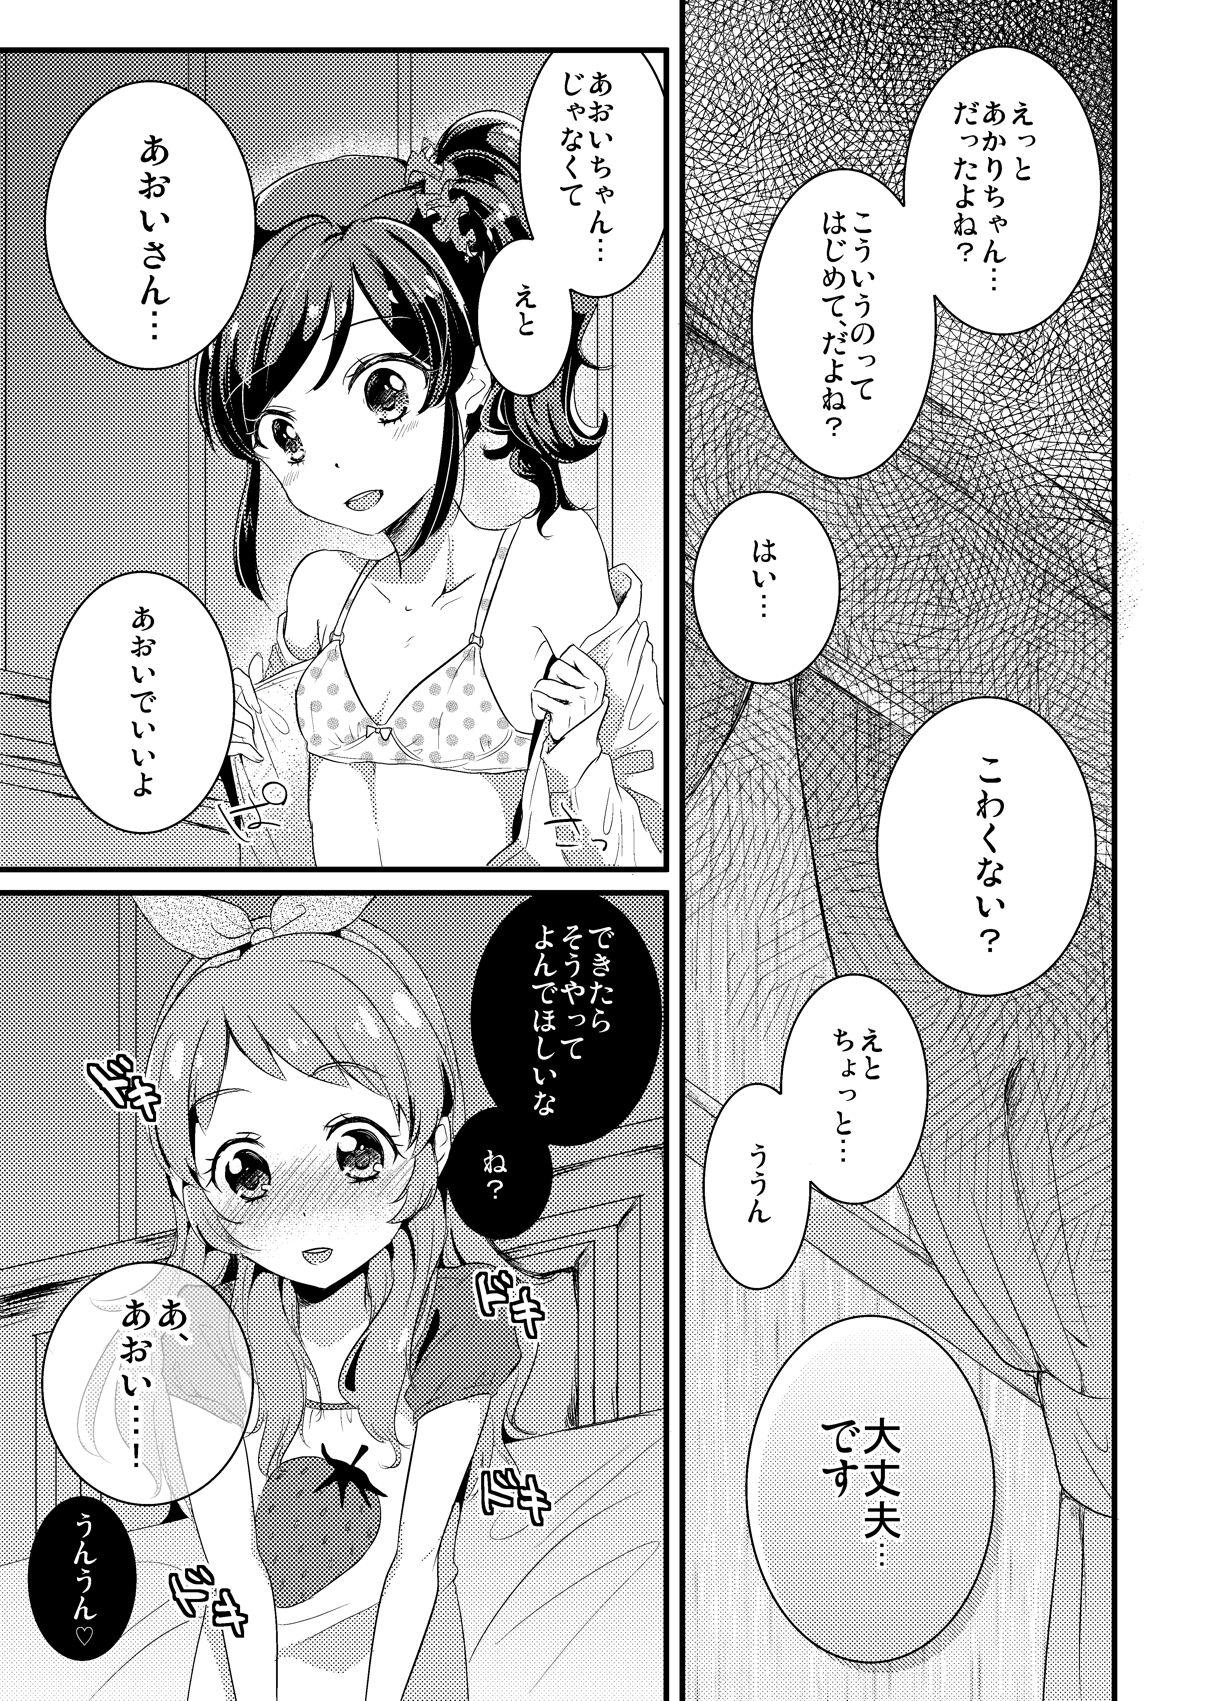 Squirting Akari · Aoi manga Warning does not sound - Aikatsu Tamil - Page 1